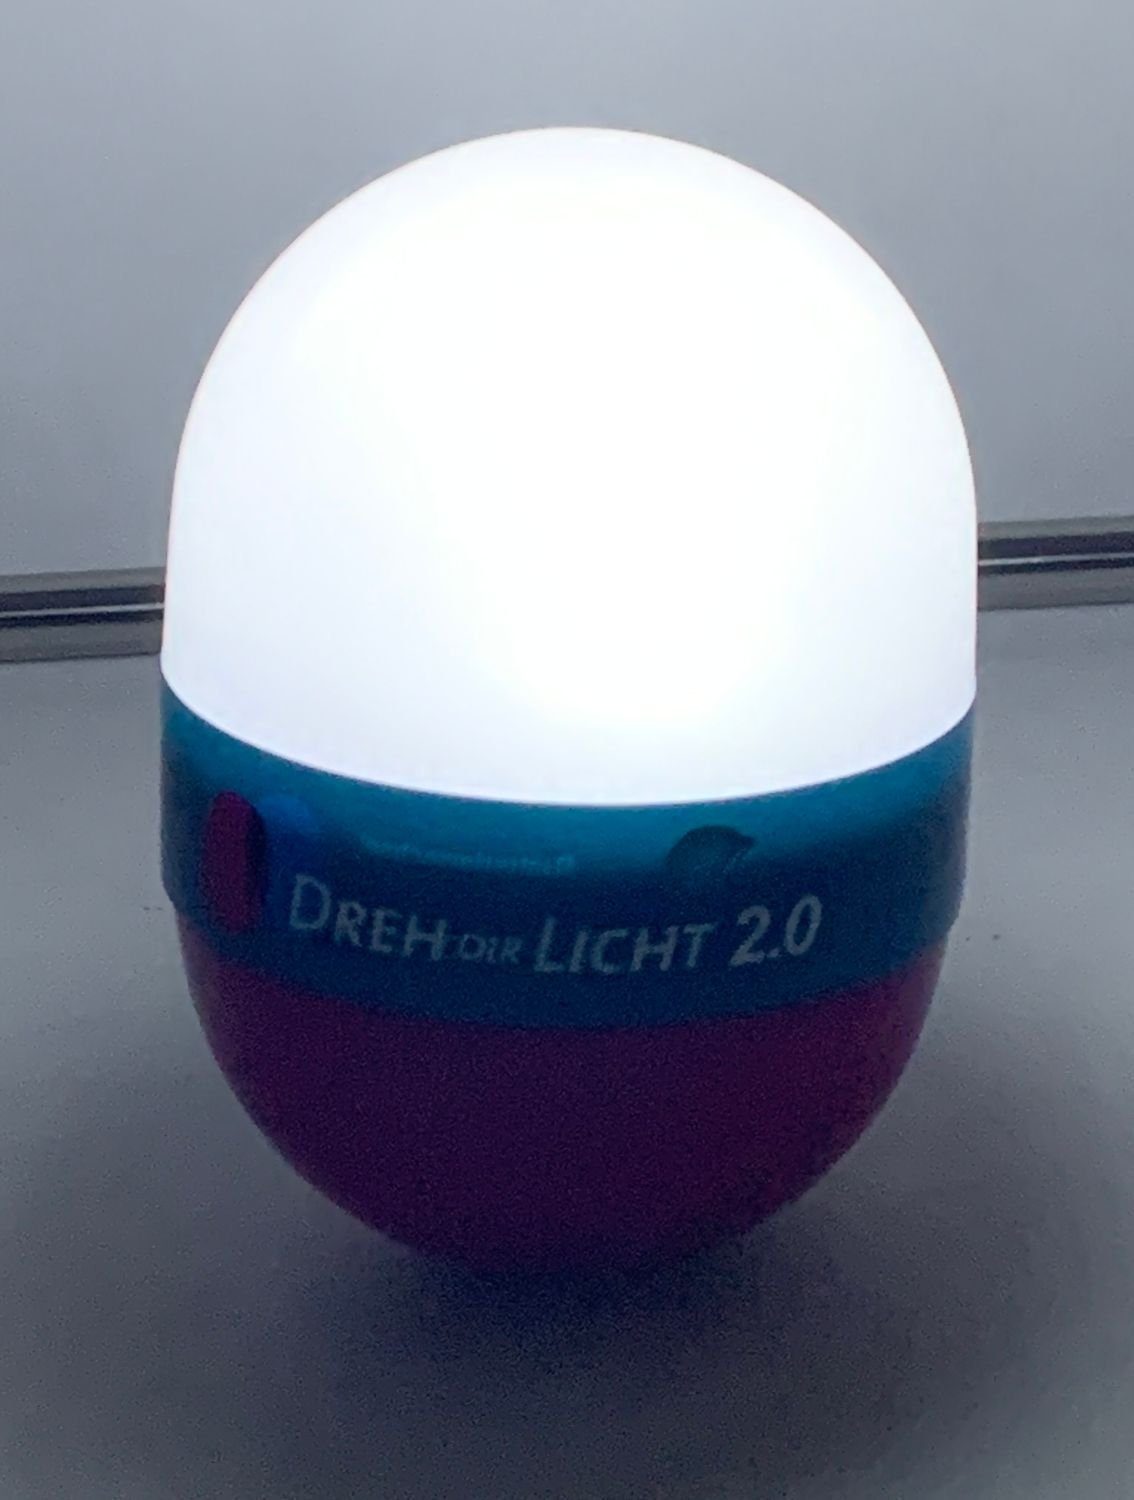 Licht Taschenlampe Dekolicht grün LED Dir Campinglampe Leselam 2.0 Nachtlicht 12,5cm BURI Dreh